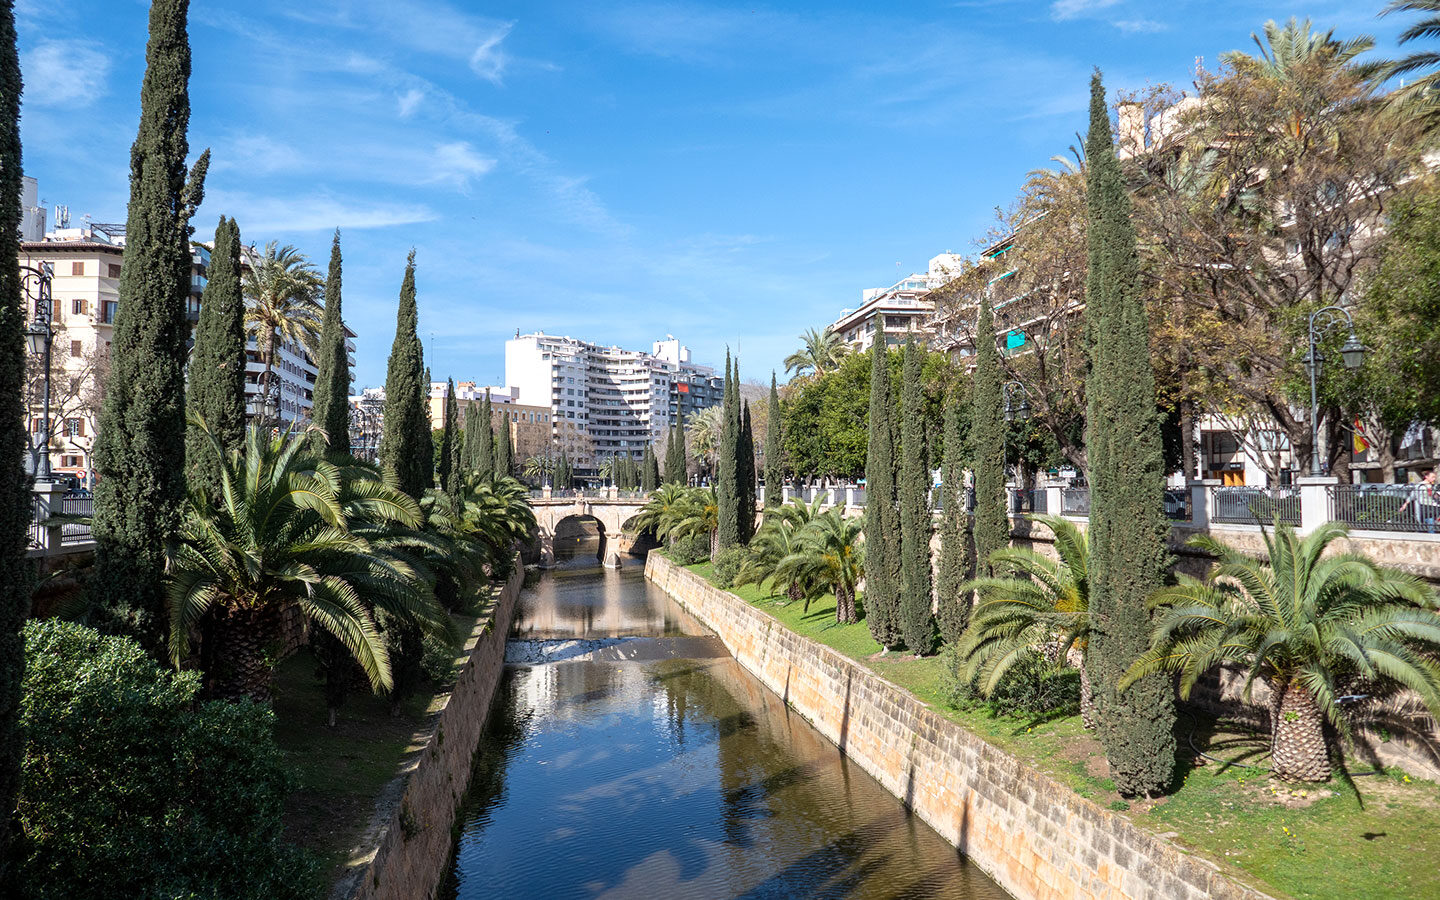 Along the Passeig de Mallorca canal